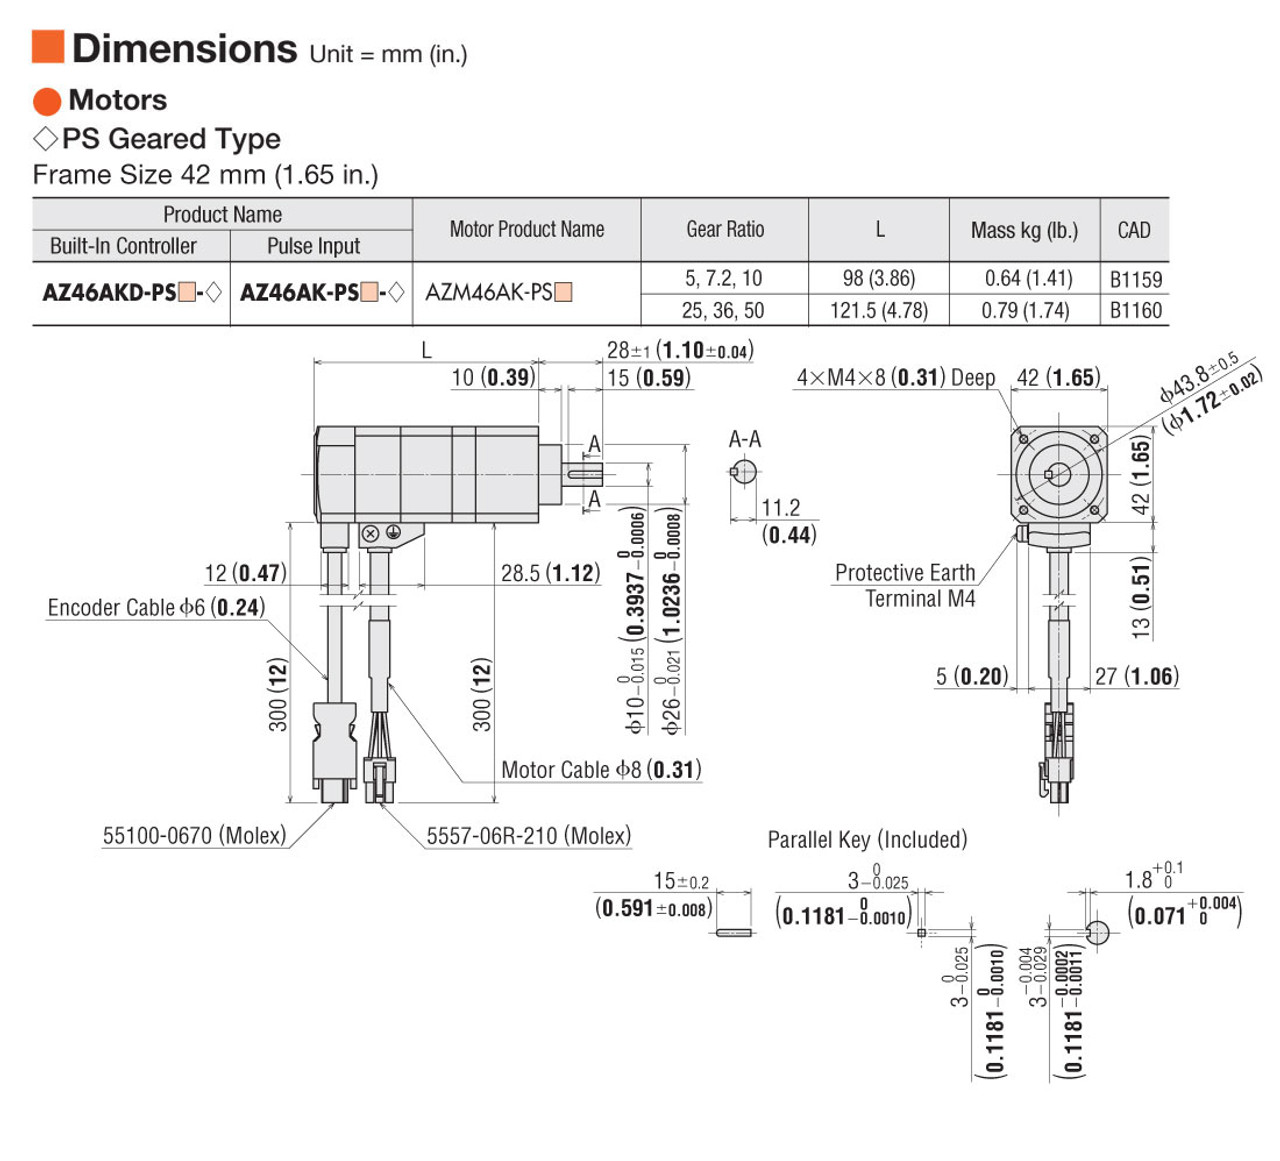 AZM46AK-PS10 - Dimensions